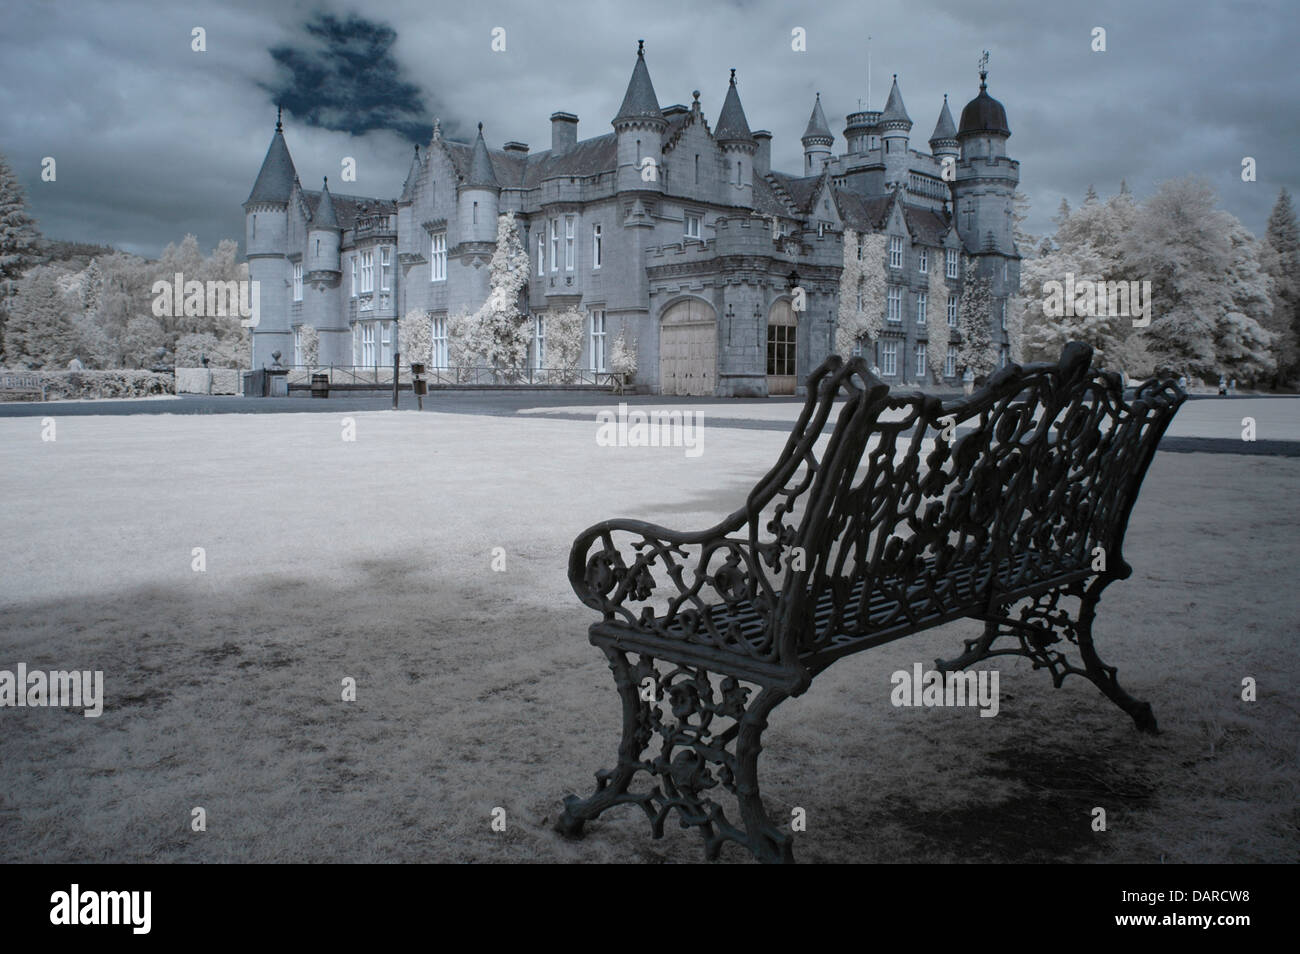 Imagen infrarroja de el castillo de Balmoral, Escocia con banco de jardín en primer plano. Su Alteza Real la Reina Isabel y su familia pasar el verano aquí. Foto de stock